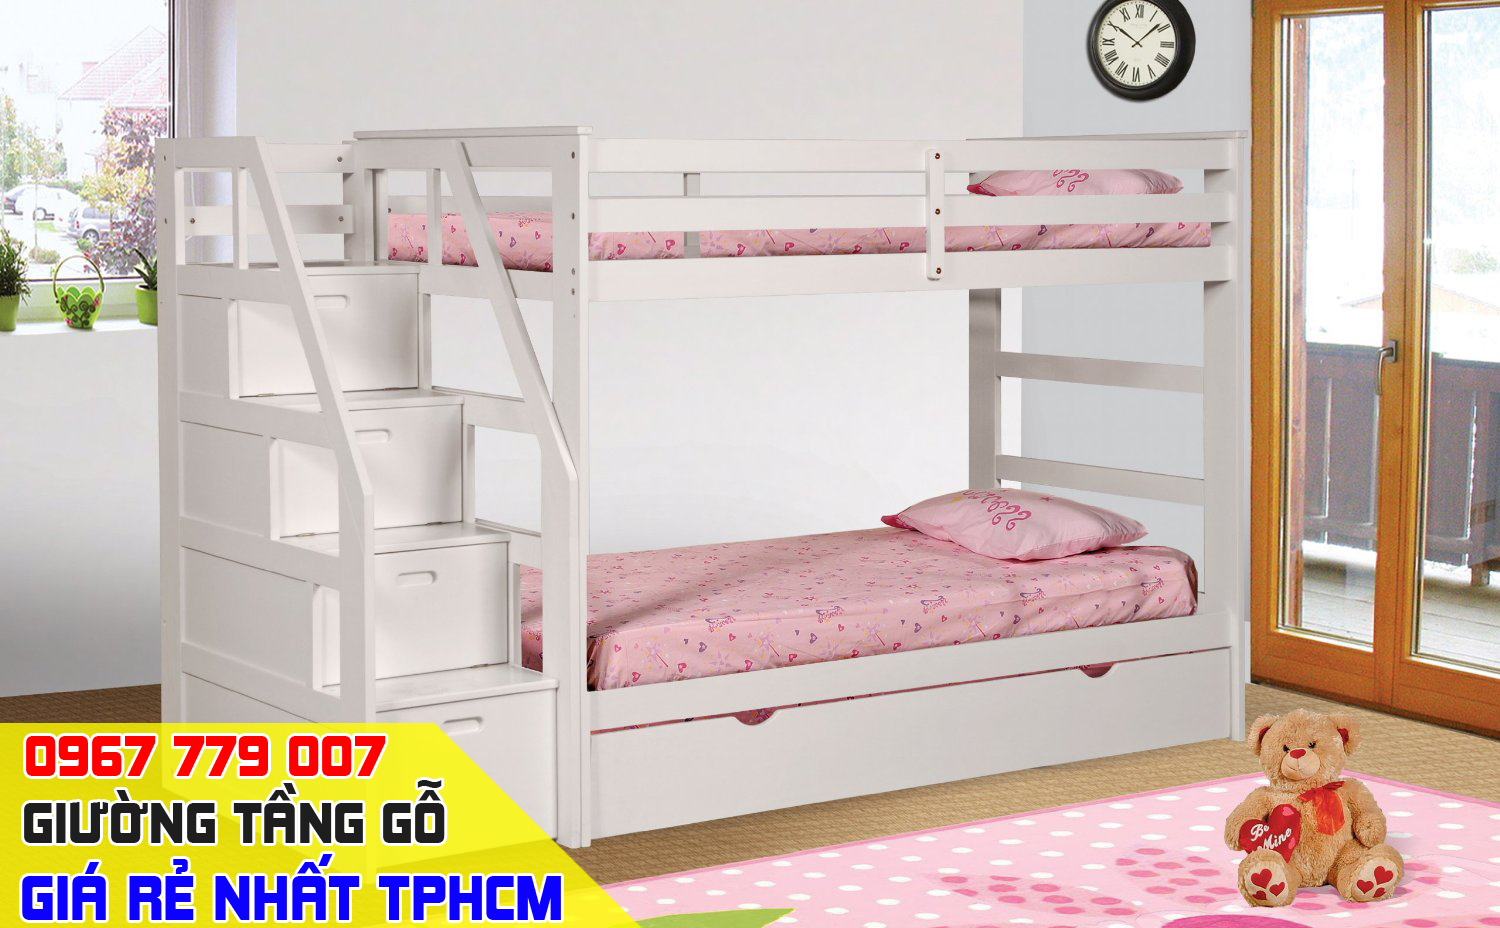 mẫu giường tầng gỗ 2 đầu giường liền nhau tại tphcm